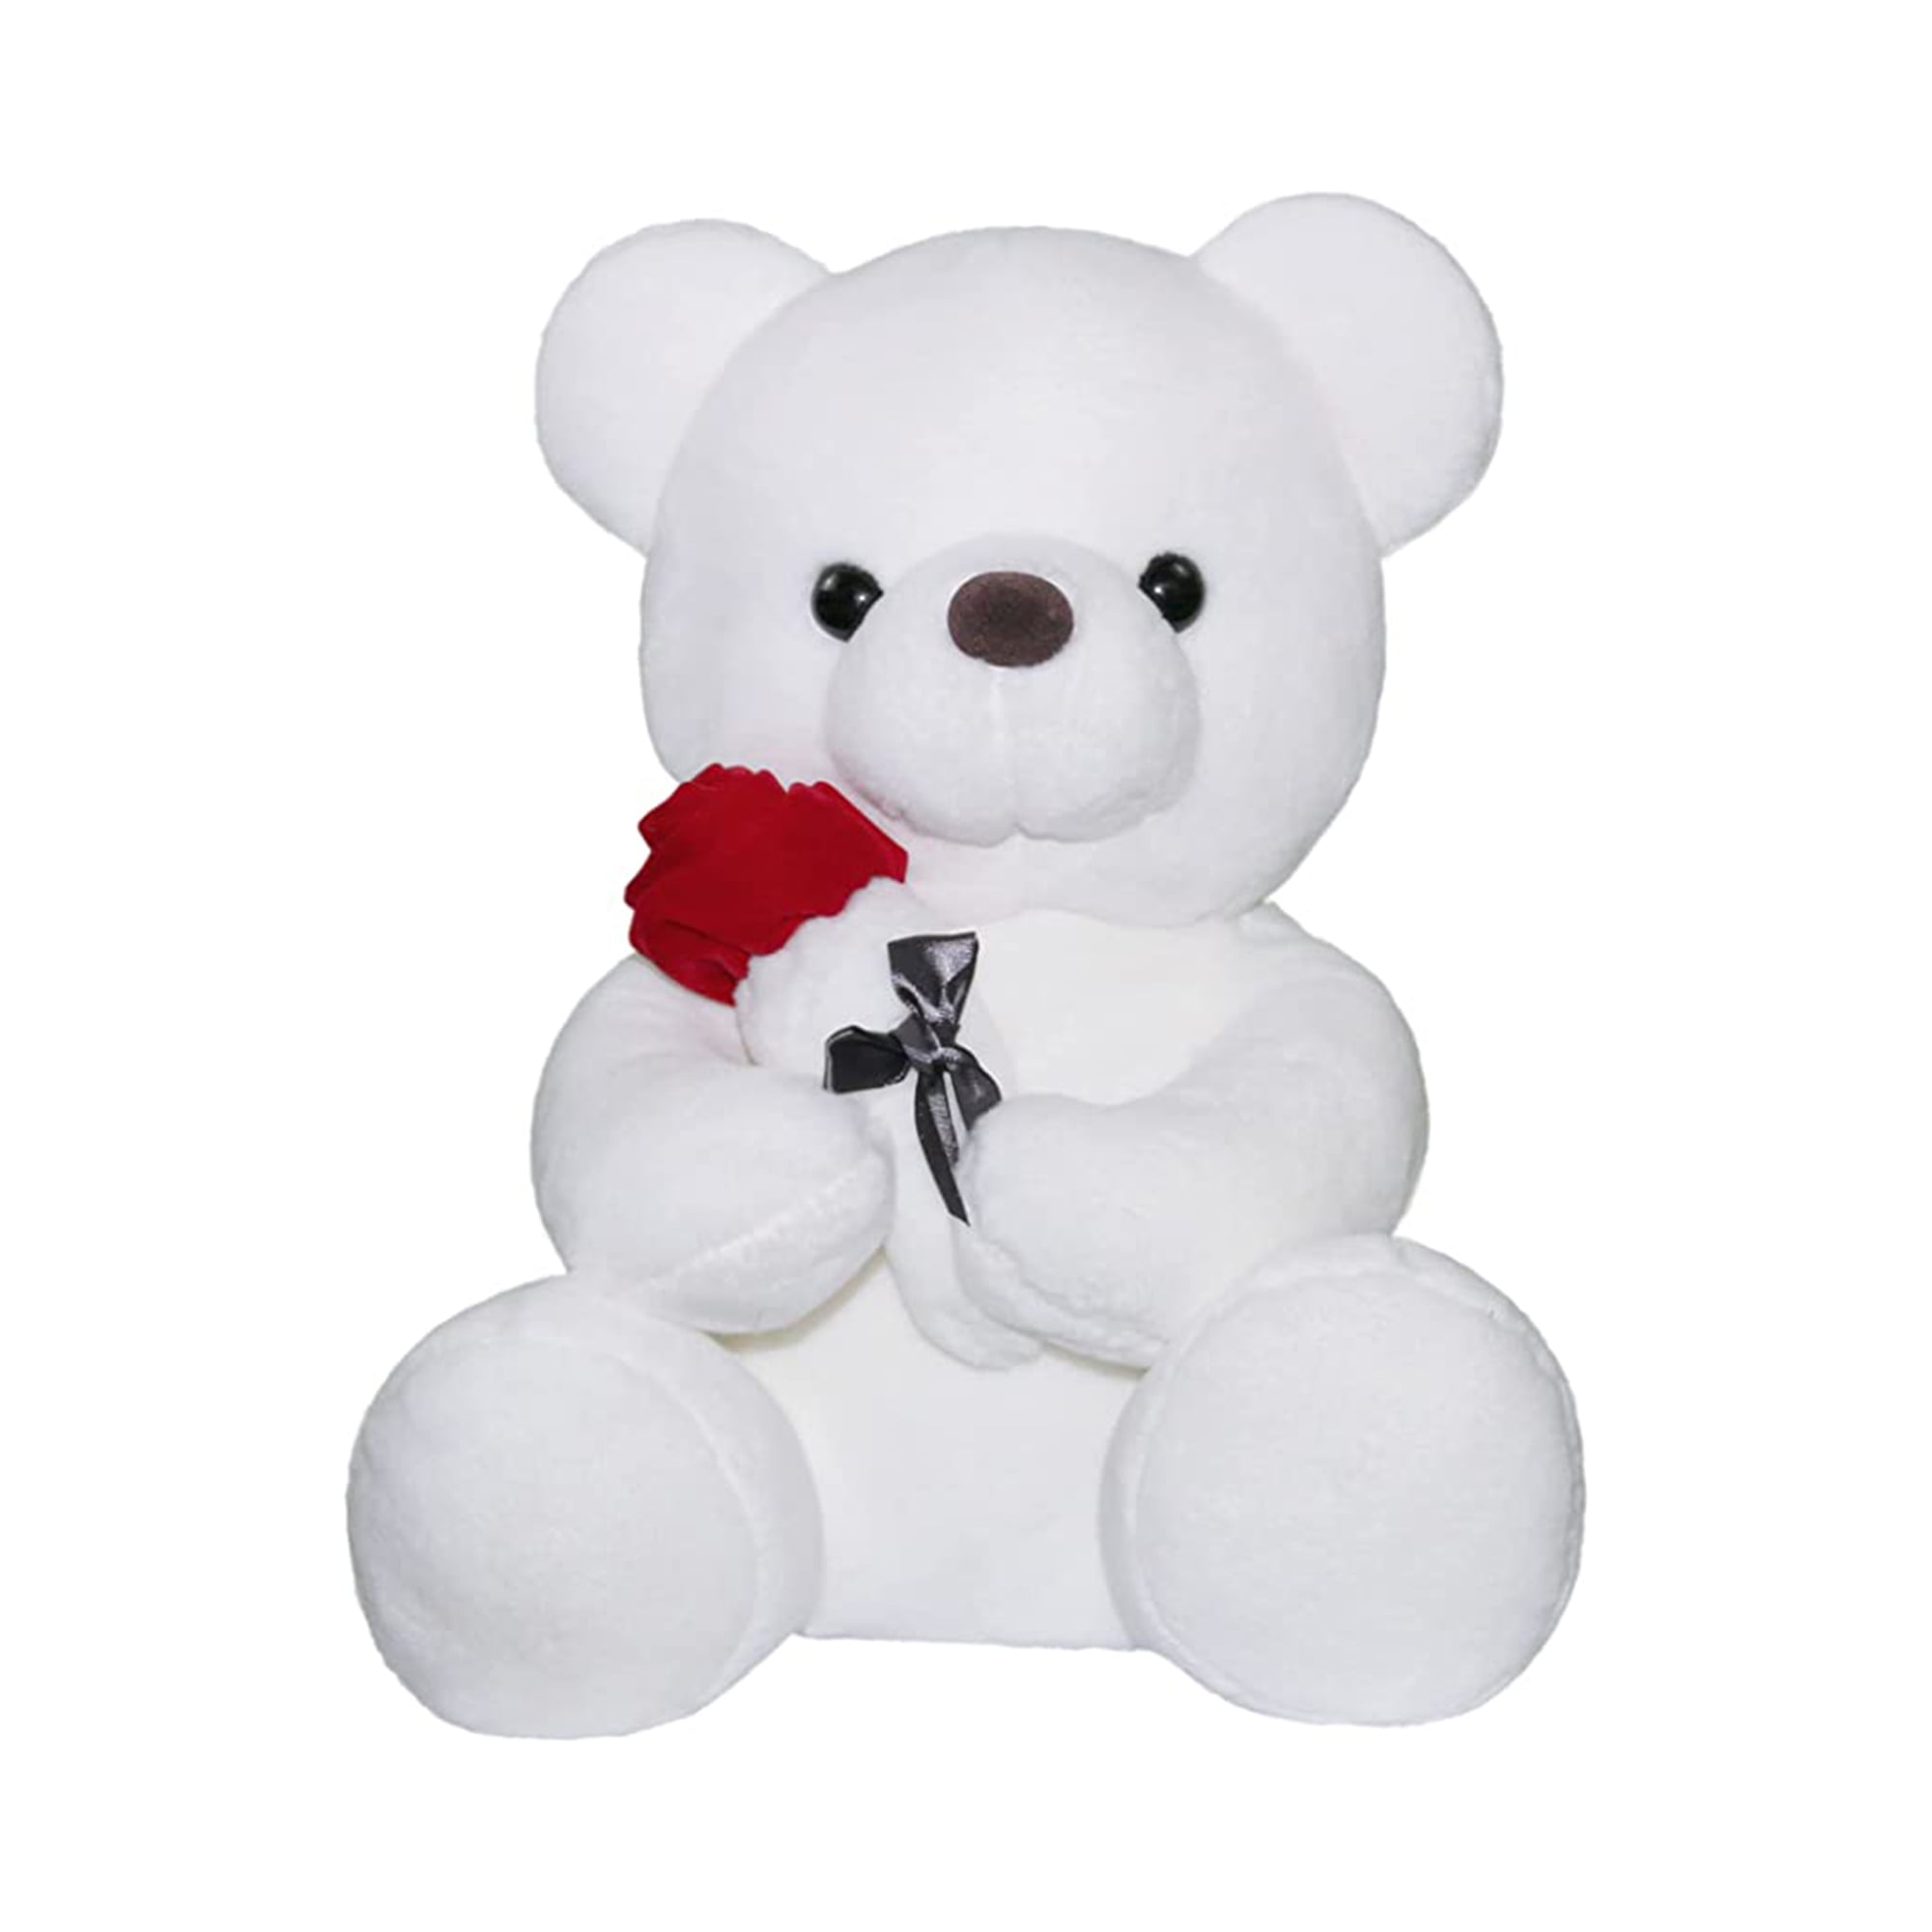 Teddy Bear Gift Present Birthday Xmas GEORGE Cute And Cuddly NEW 